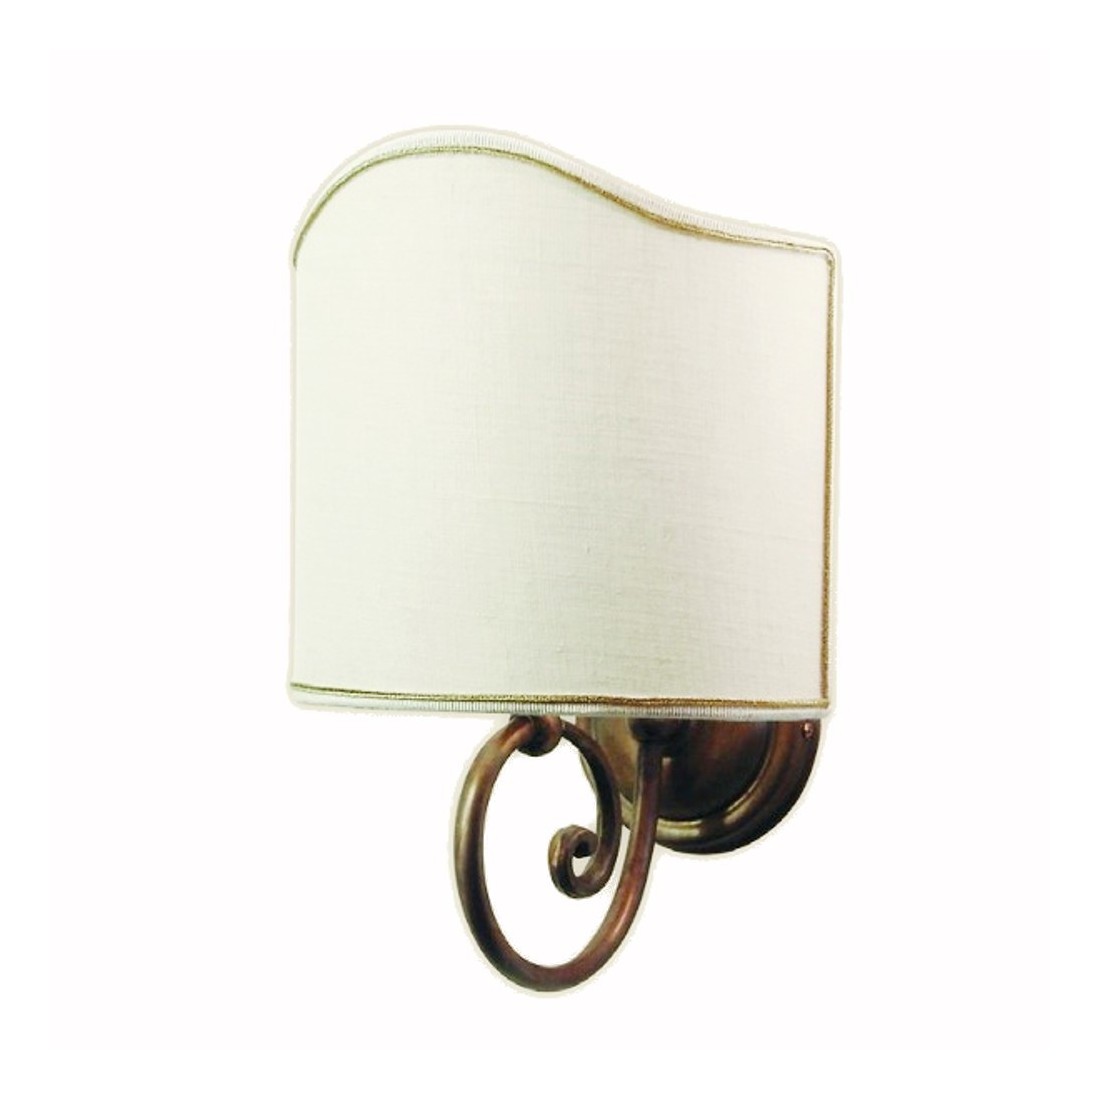 Applique BA-LEO P E27 LED piccolo ottone invecchiato lampada parete classica rustica stoffa cotone interno